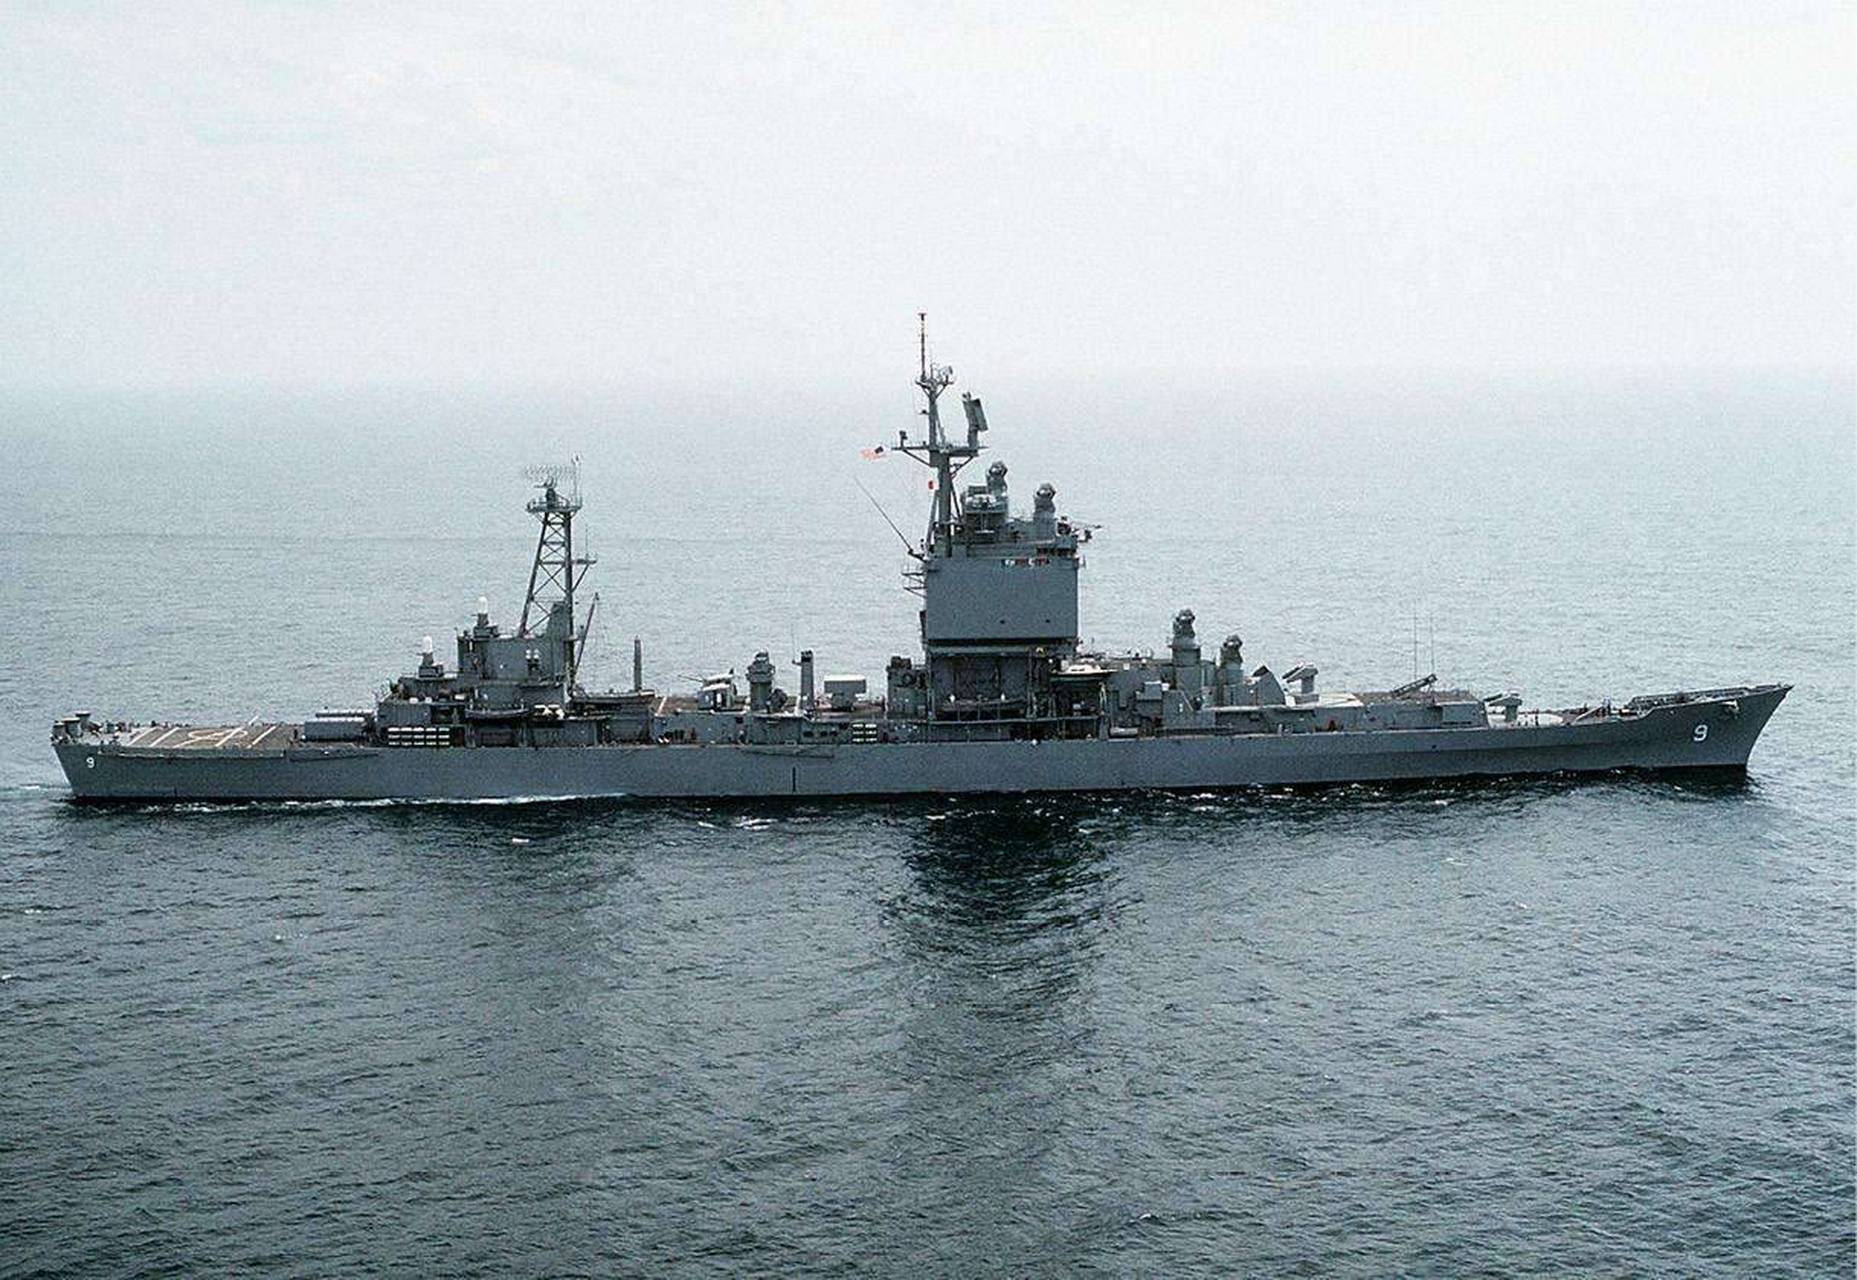 长滩号巡洋舰是美国于20世纪50年代后期建造的核动力巡洋舰,也是